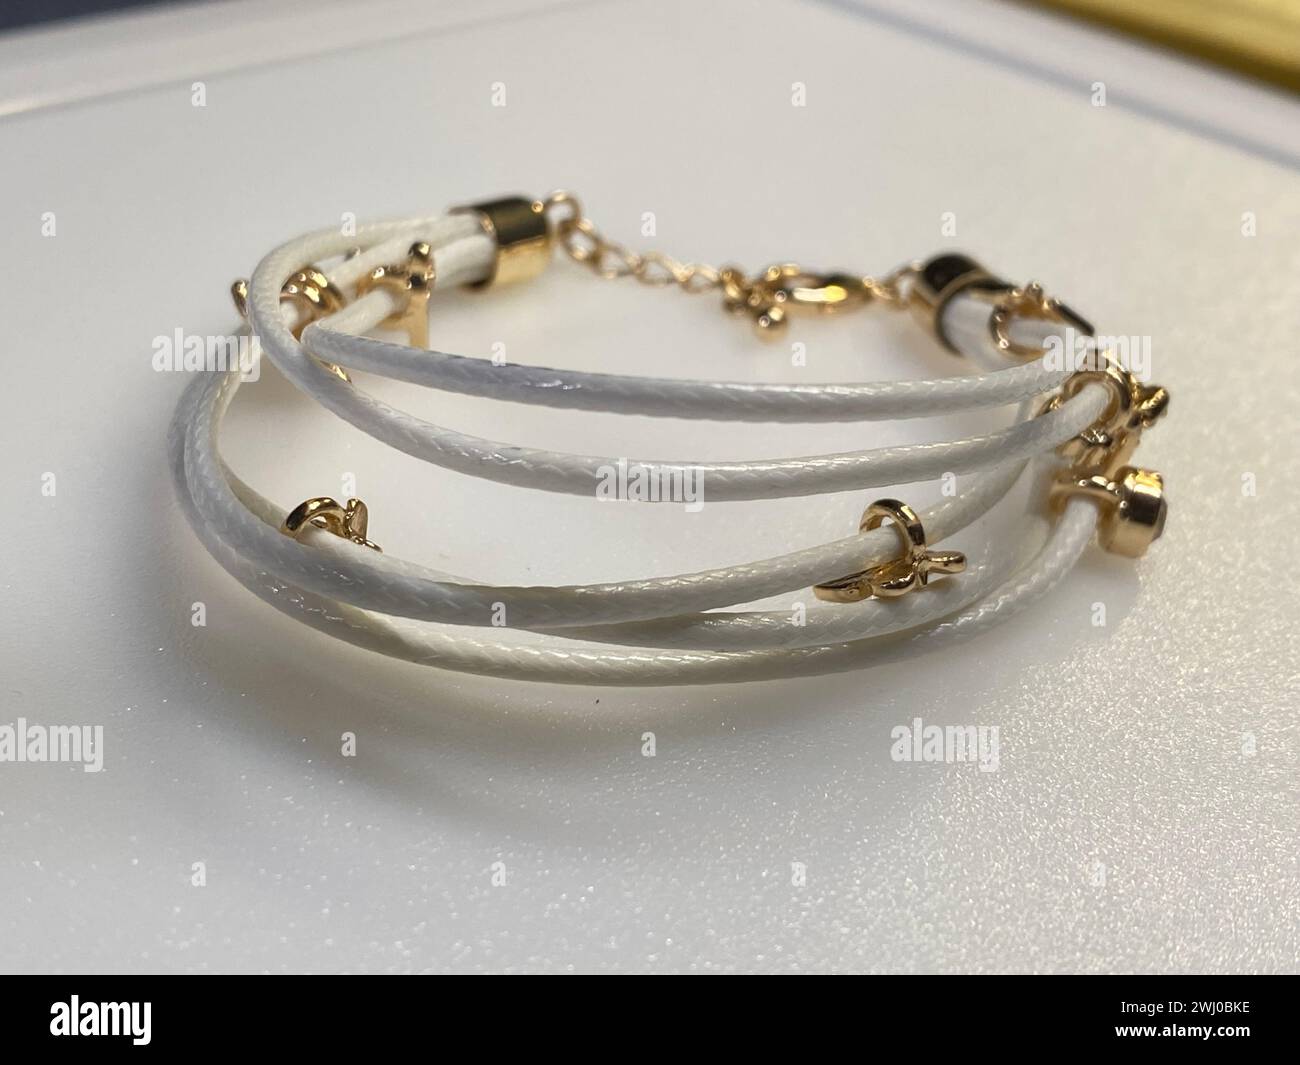 Bracelets empilés en cuir et métal ornés de perles et de touches dorées Banque D'Images